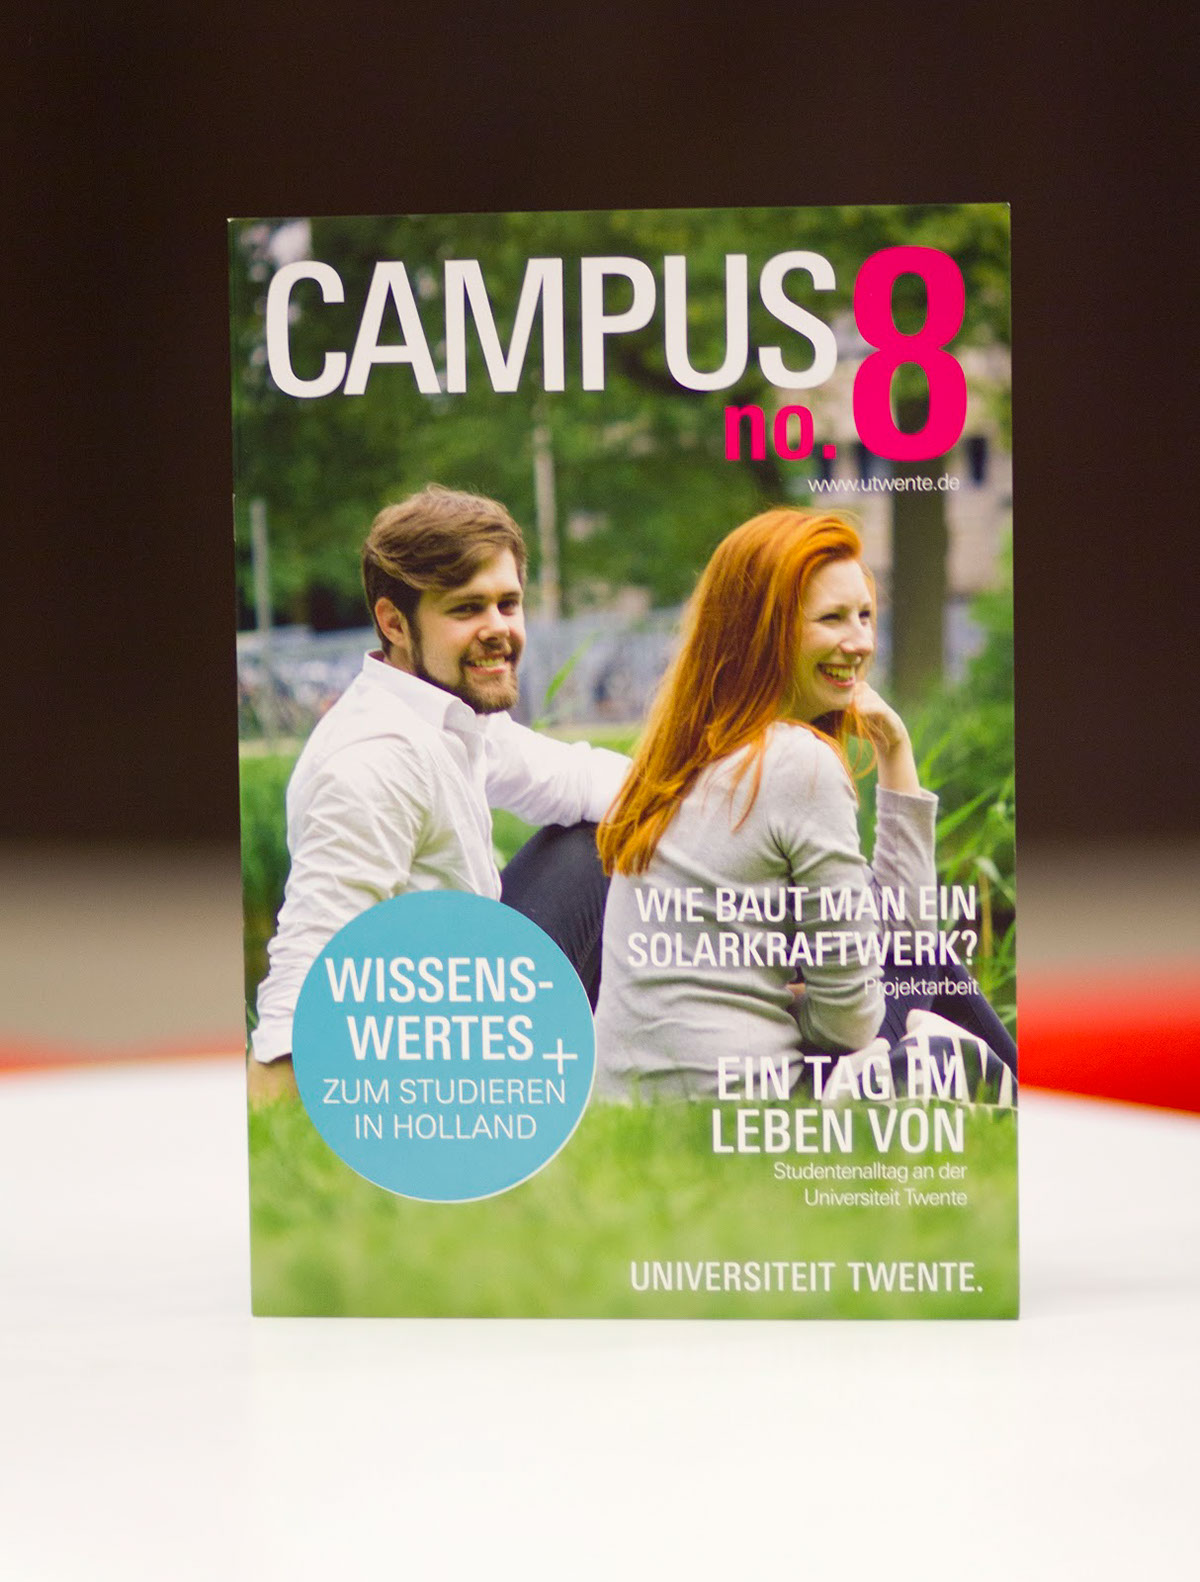 dteam dampus campusmagazine magazine University UTwente enschede marketing  